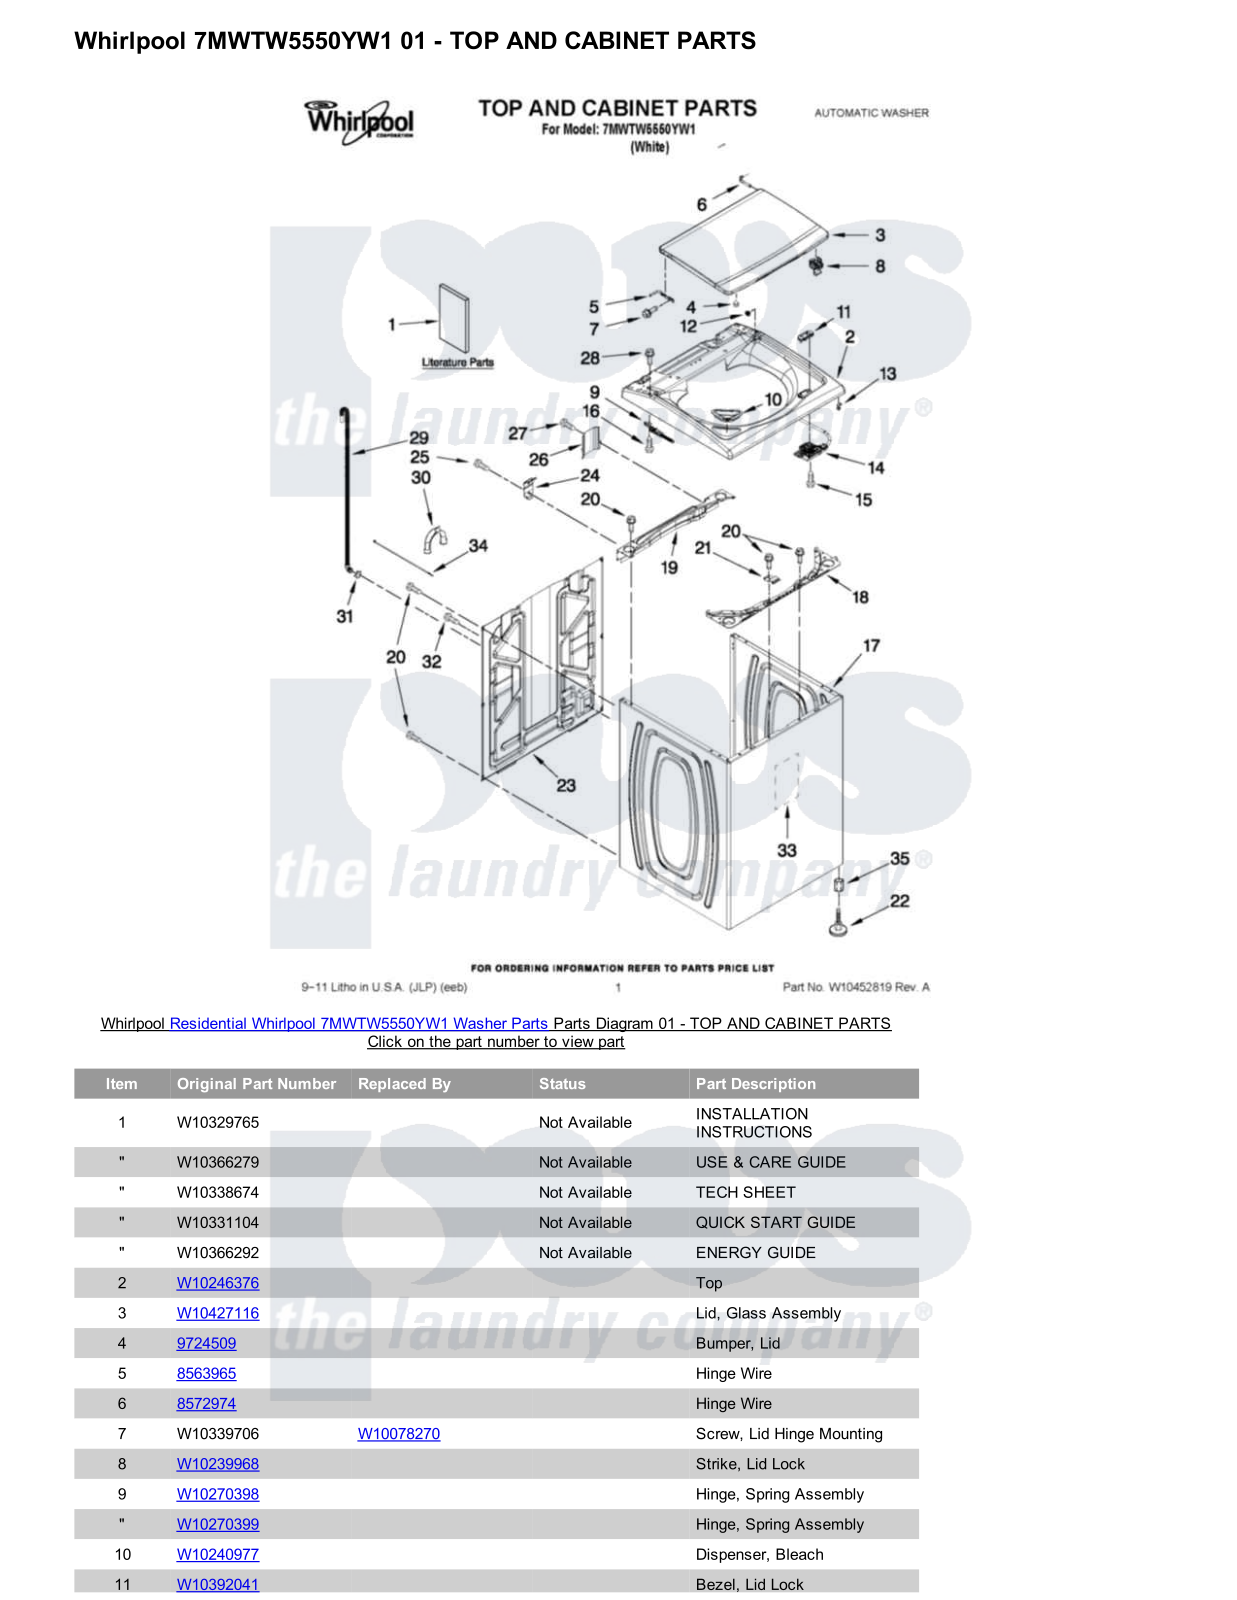 Whirlpool 7MWTW5550YW1 Parts Diagram